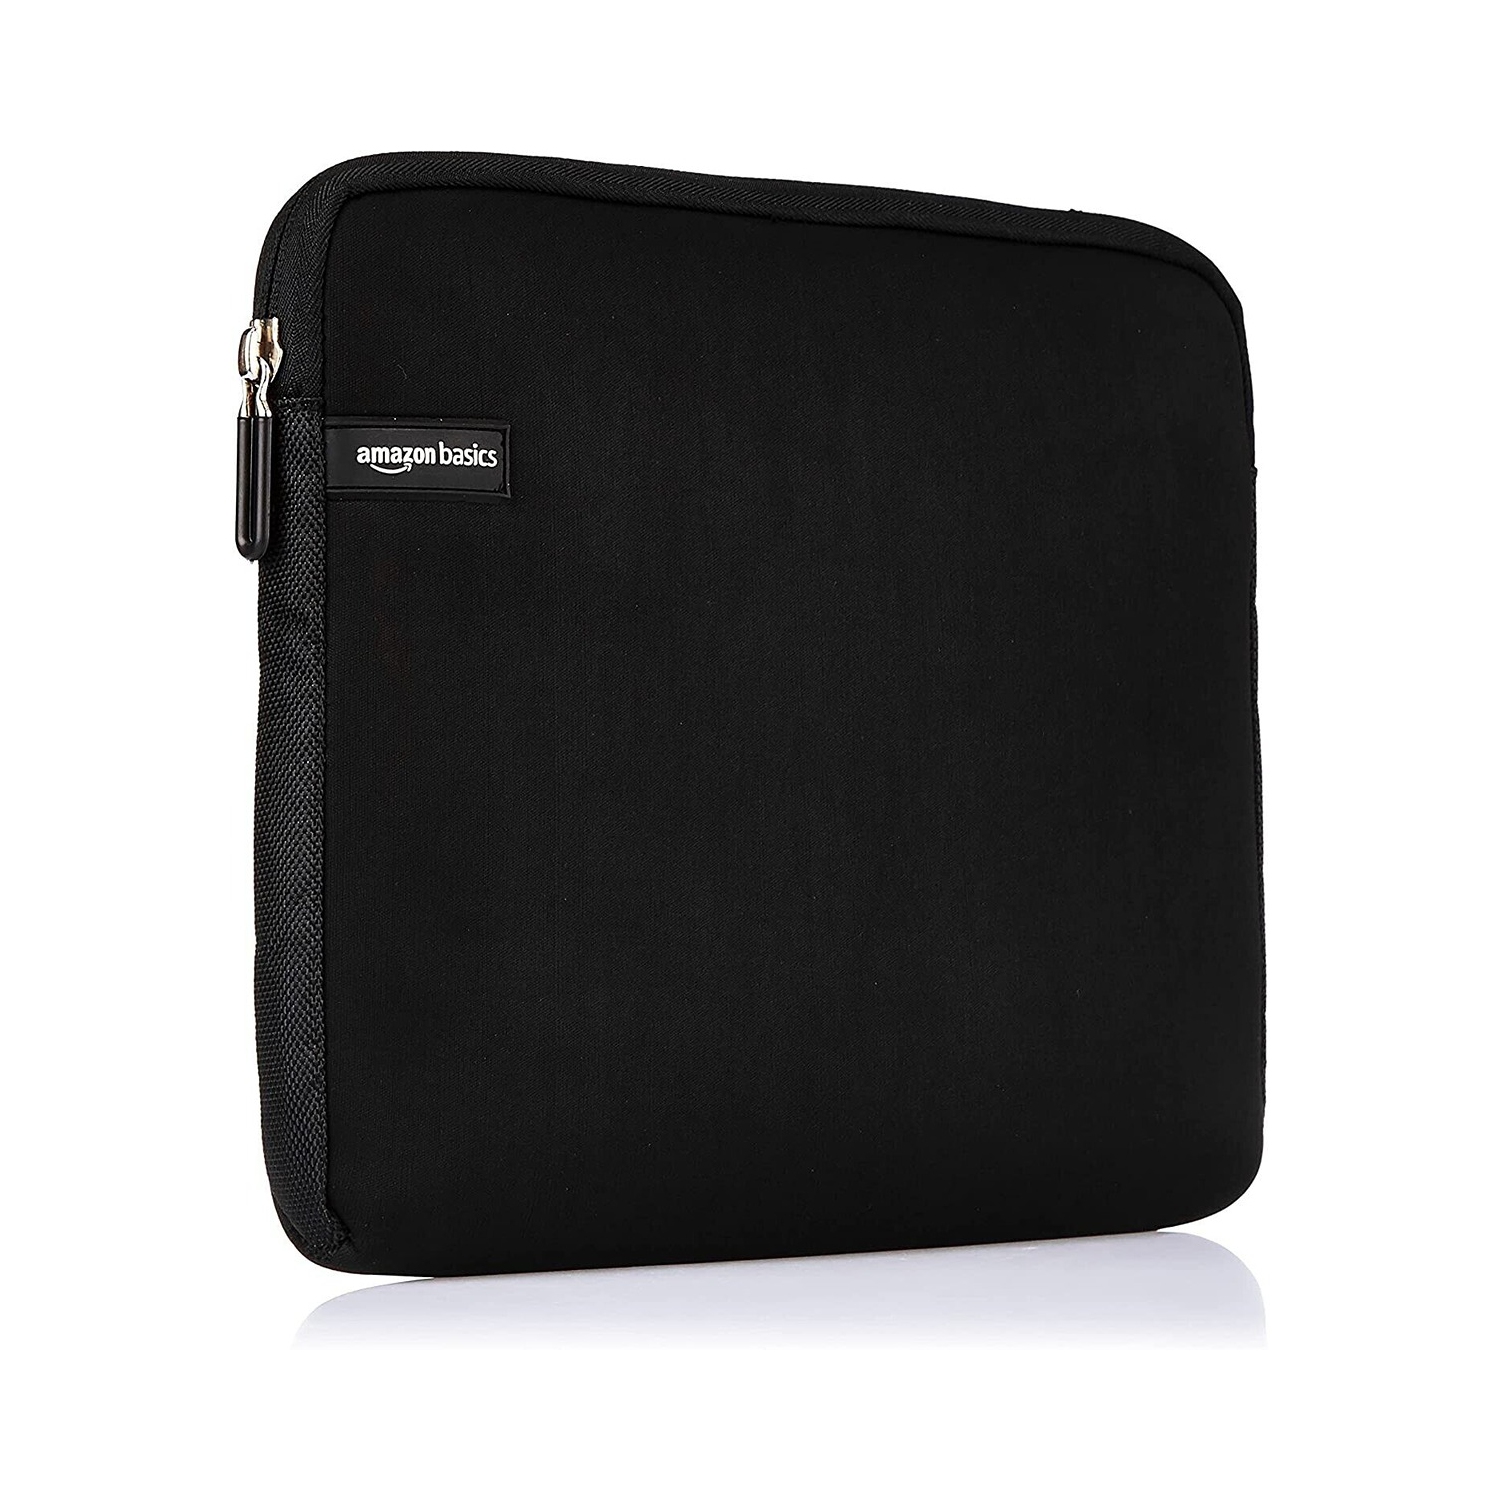 AmazonBasics Fits Laptops and Ultrabooks up to 11.6 Inches Sleek Padded Laptop Sleeve - Black